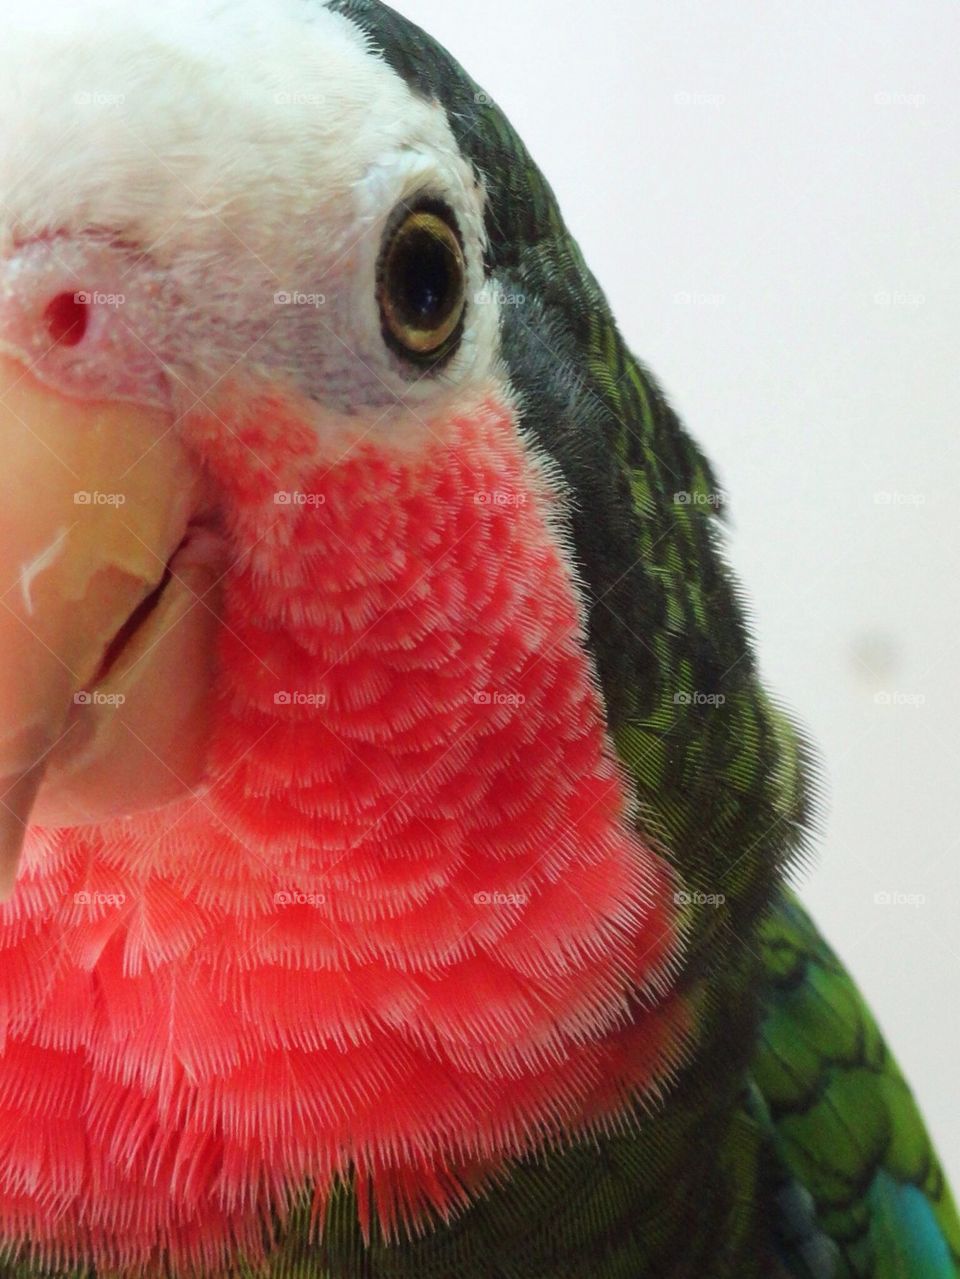 Parrot 7